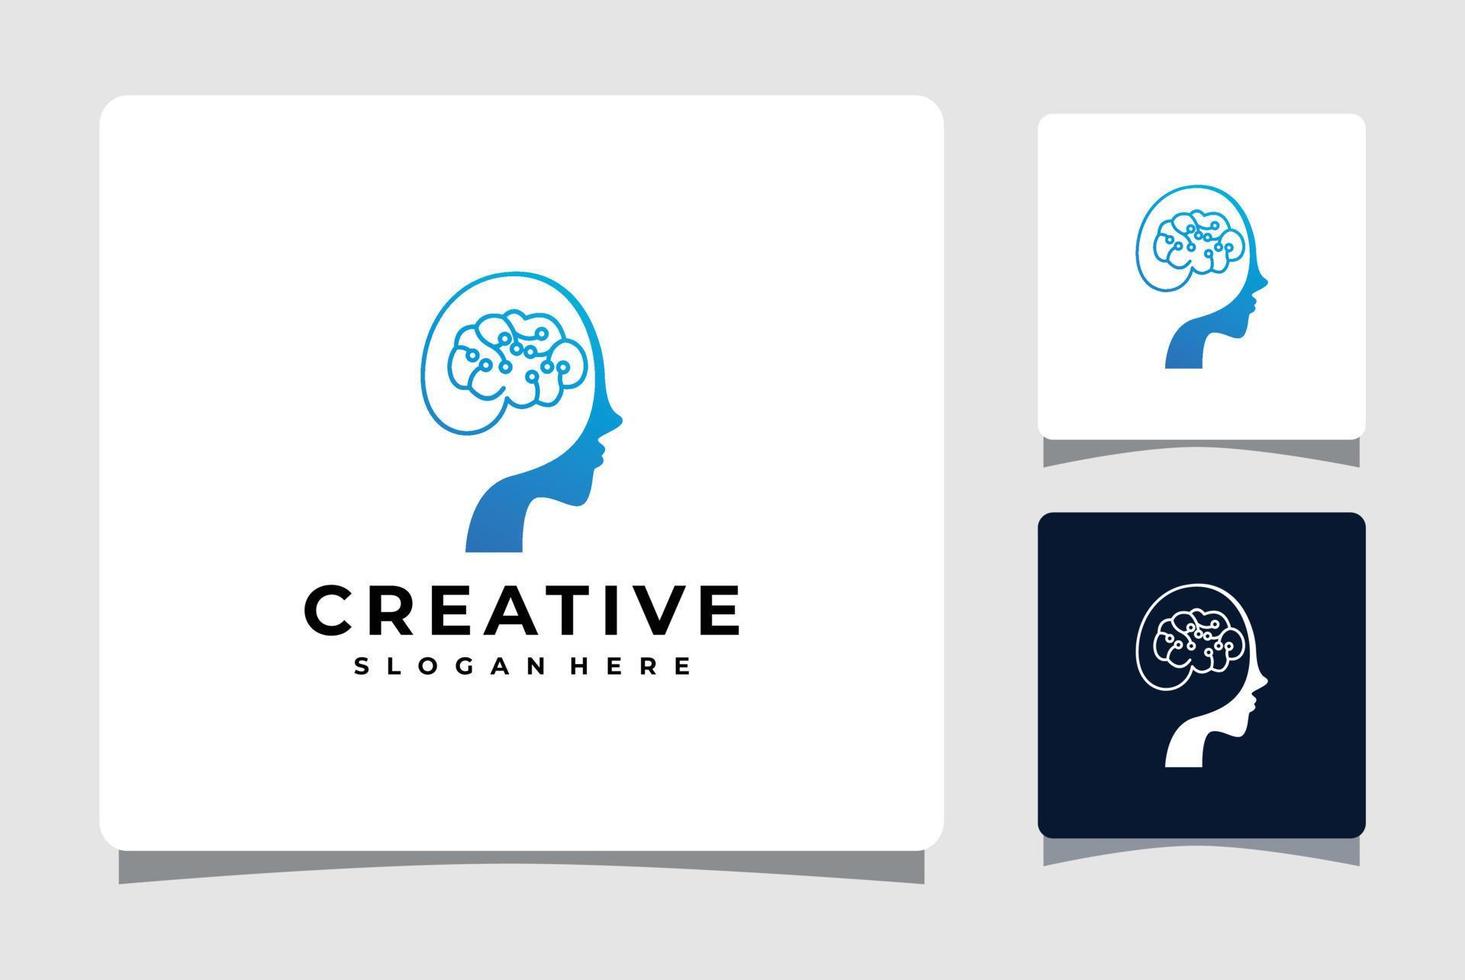 Inspiration für das Design von Kopf- und Gehirntechnologie-Logo-Vorlagen vektor